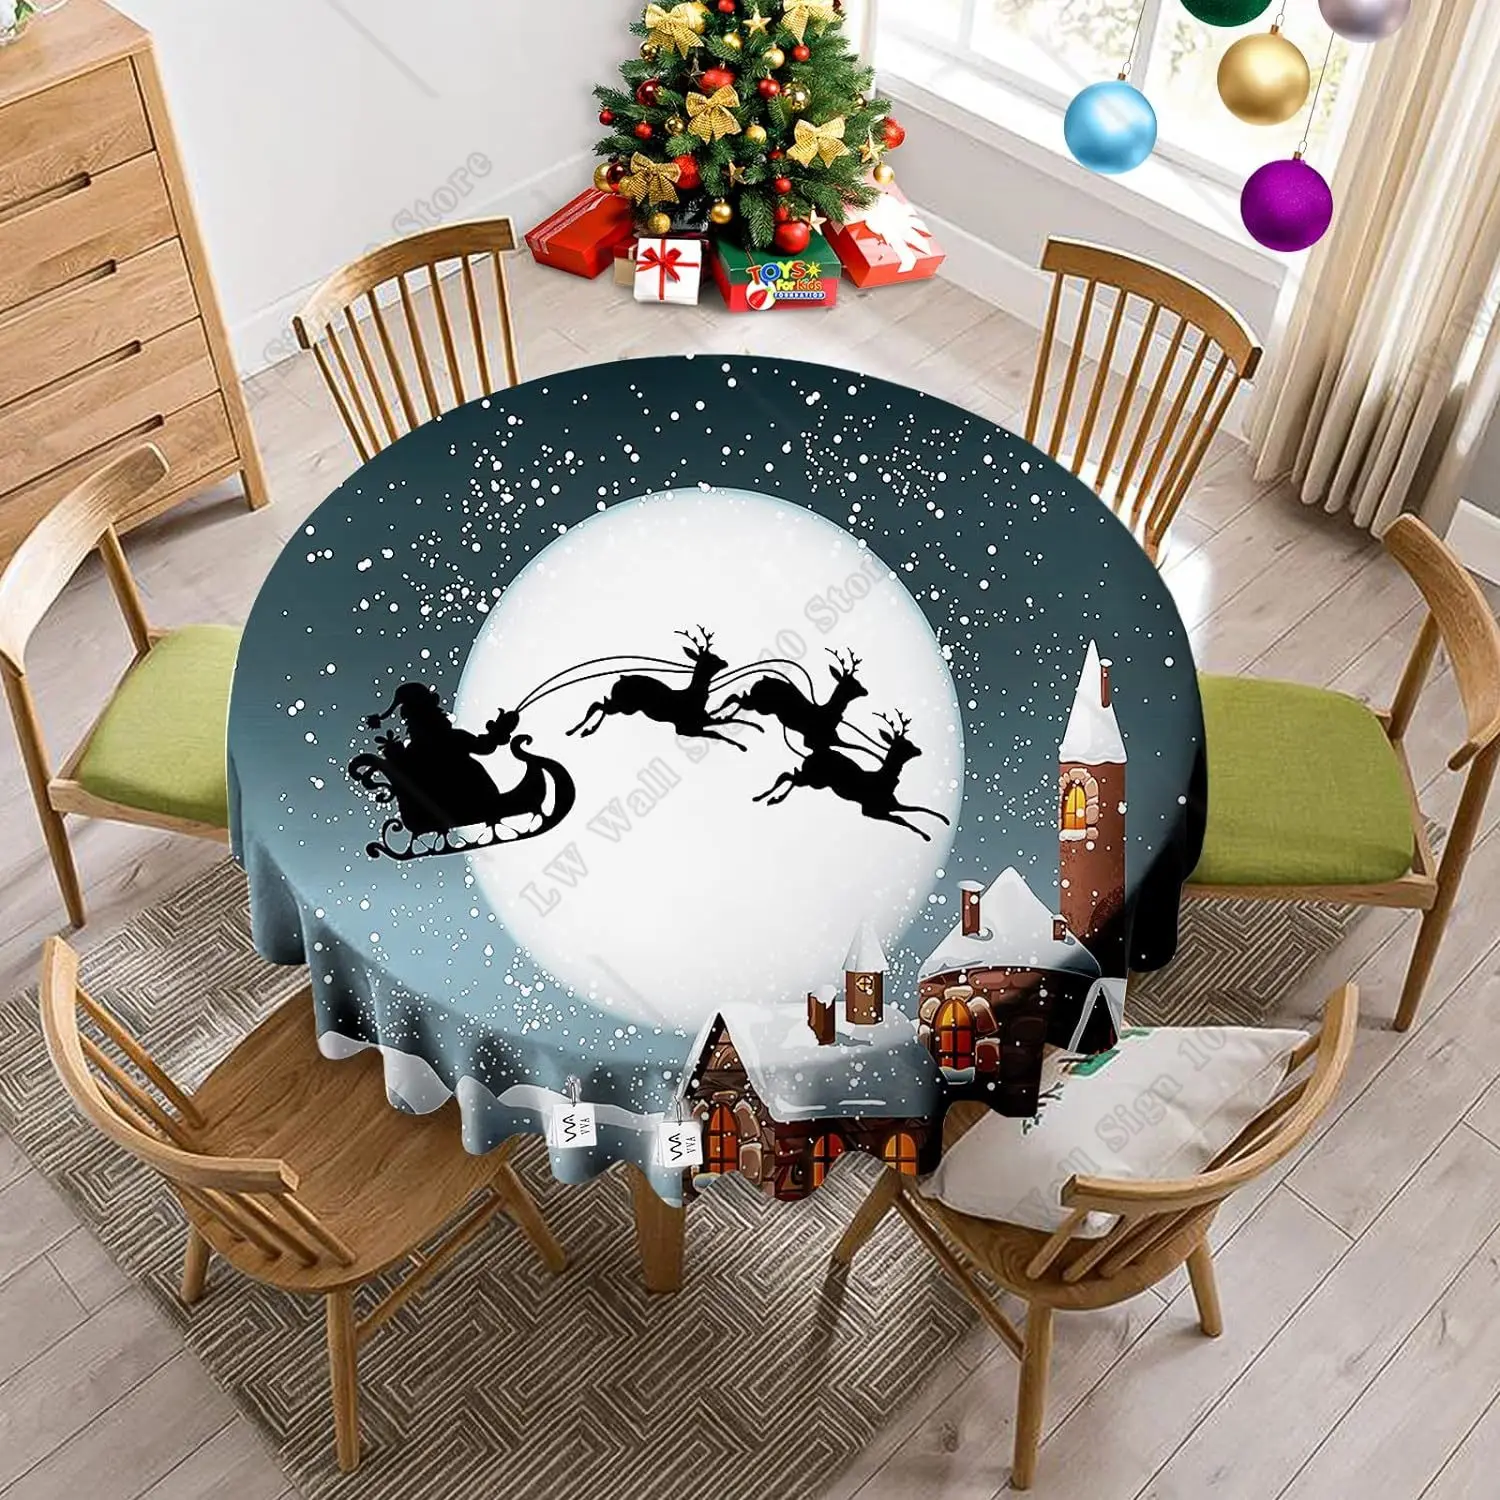 Сани Санта-Клауса со Снегом, Декоративная скатерть для круглого стола в канун зимних праздников для семейных посиделок, Рождественская вечеринка, 60 дюймов